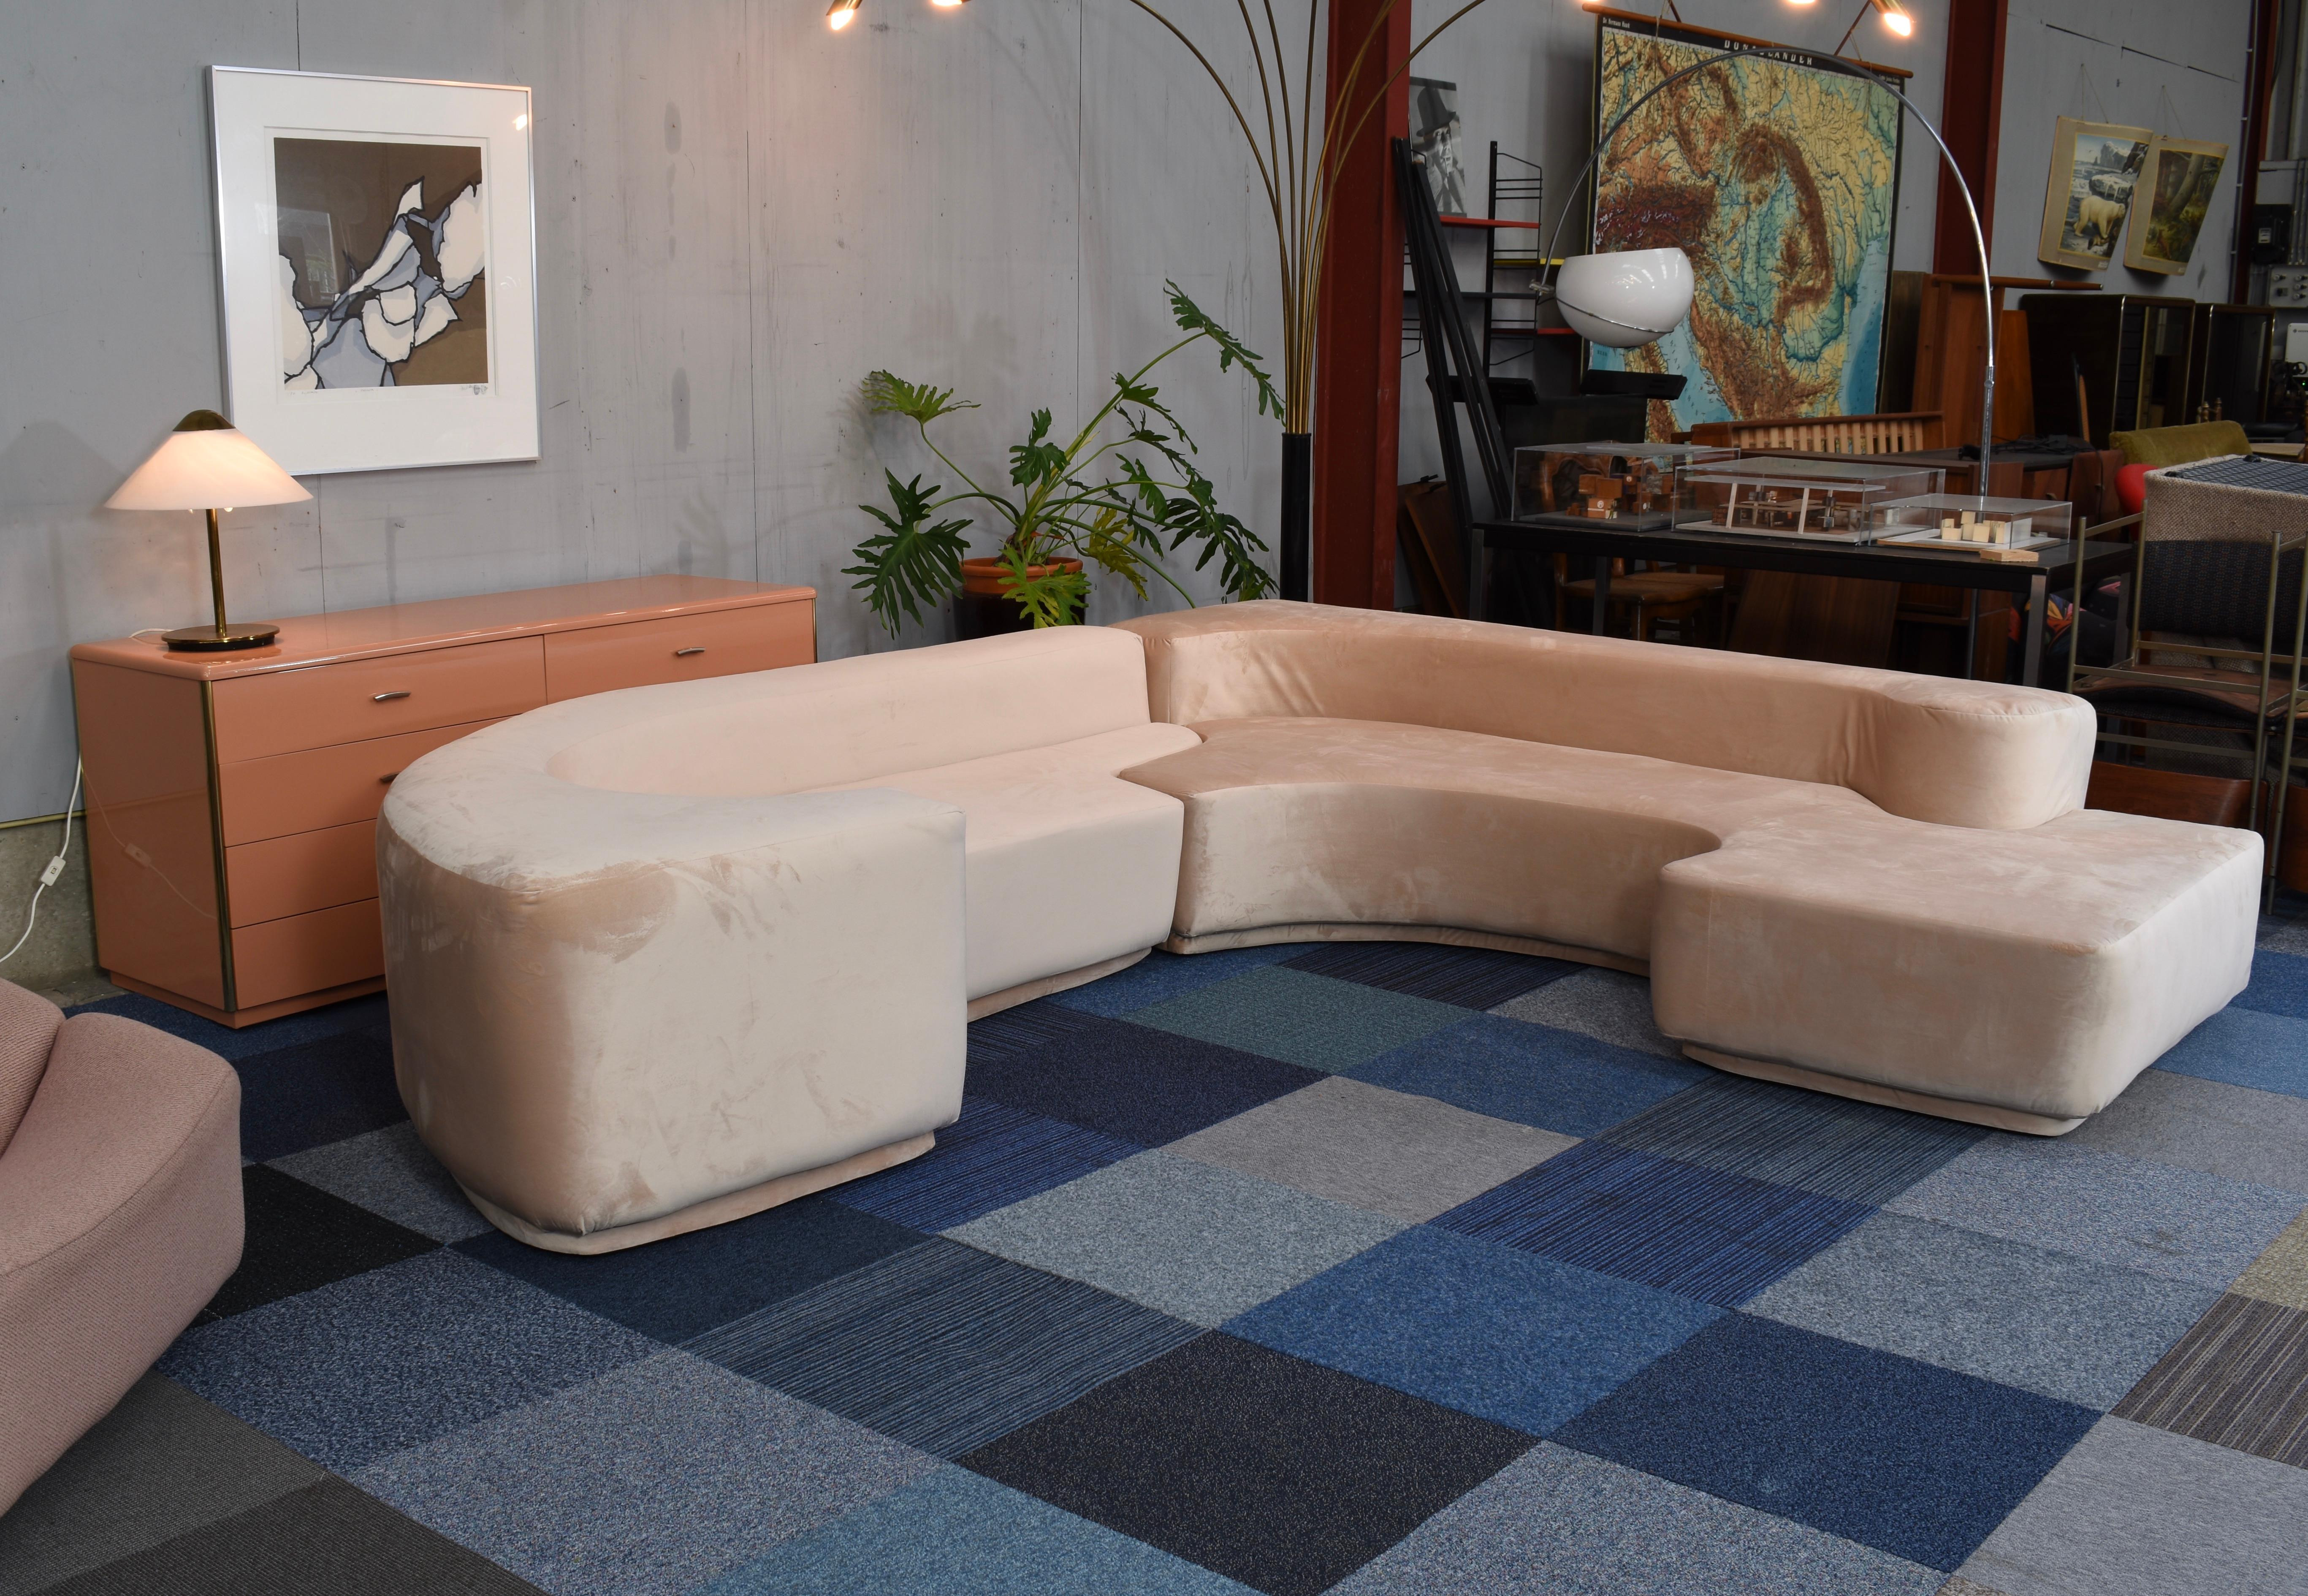 Ikonisches Sofa Lara, entworfen von Noti Massari, Roberto Pamio und Renato Toso für Stilwood, Italien - 1968.

Das Sofa besteht aus zwei Teilen, die in der Mitte zusammenkommen. Er ist komplett aus Kaltschaum gefertigt und mit einem weichen rosa